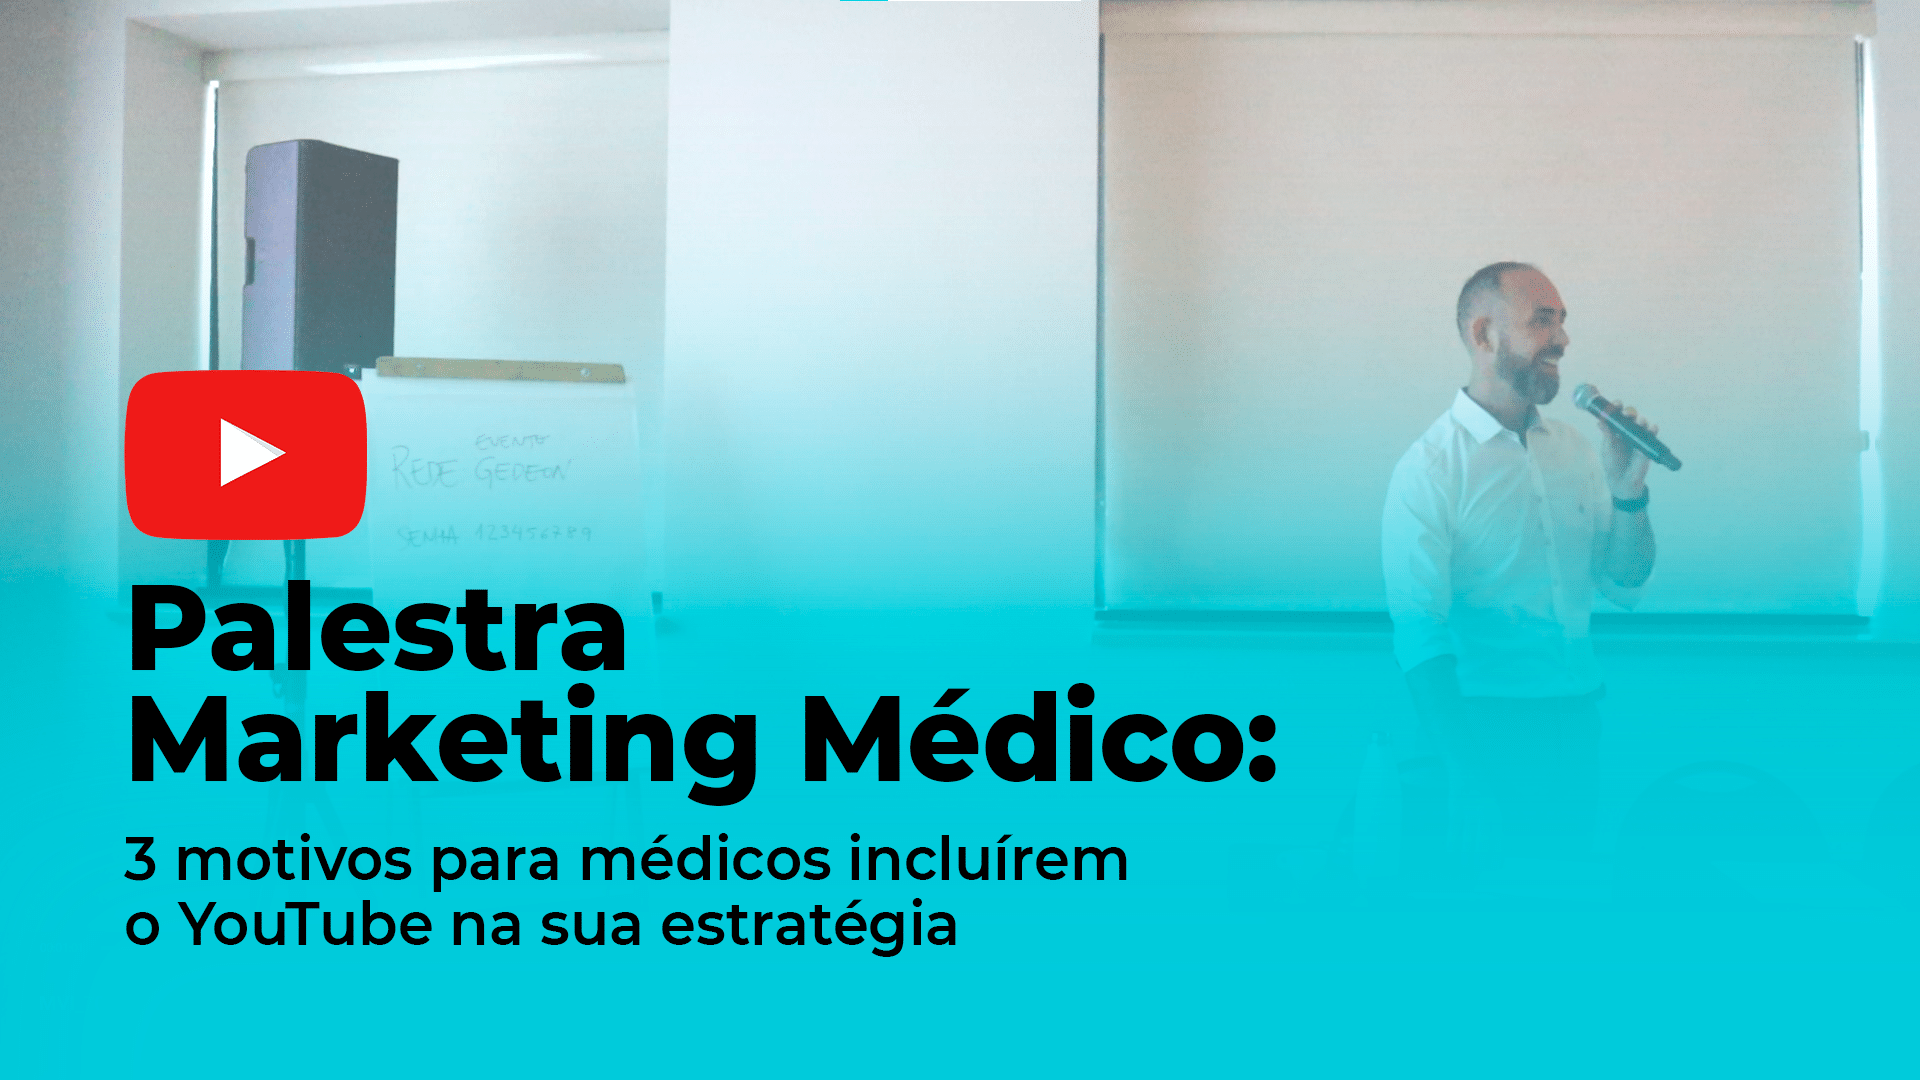 Palestra Marketing Médico